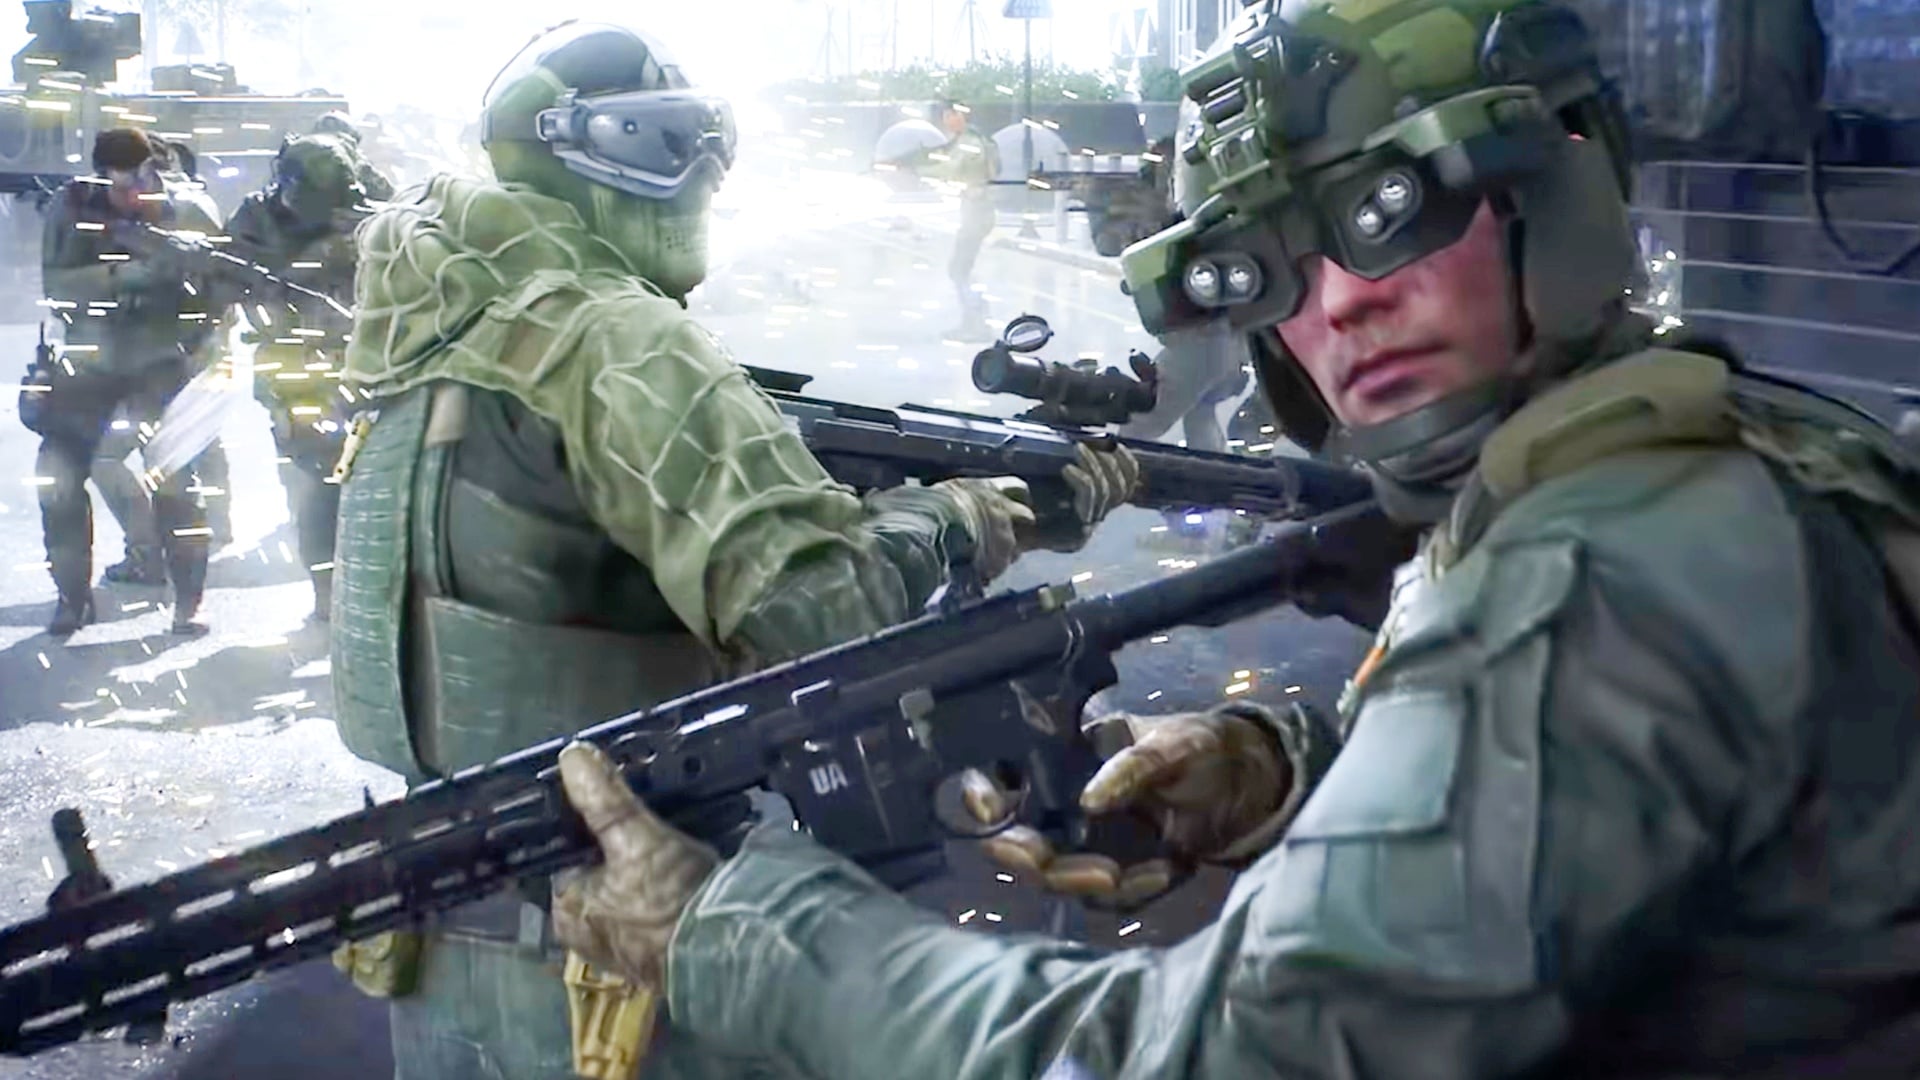 Voják vlevo na obrázku drží DSR-1. Puška má před spouští držák zásobníku pro rychlé nabíjení.